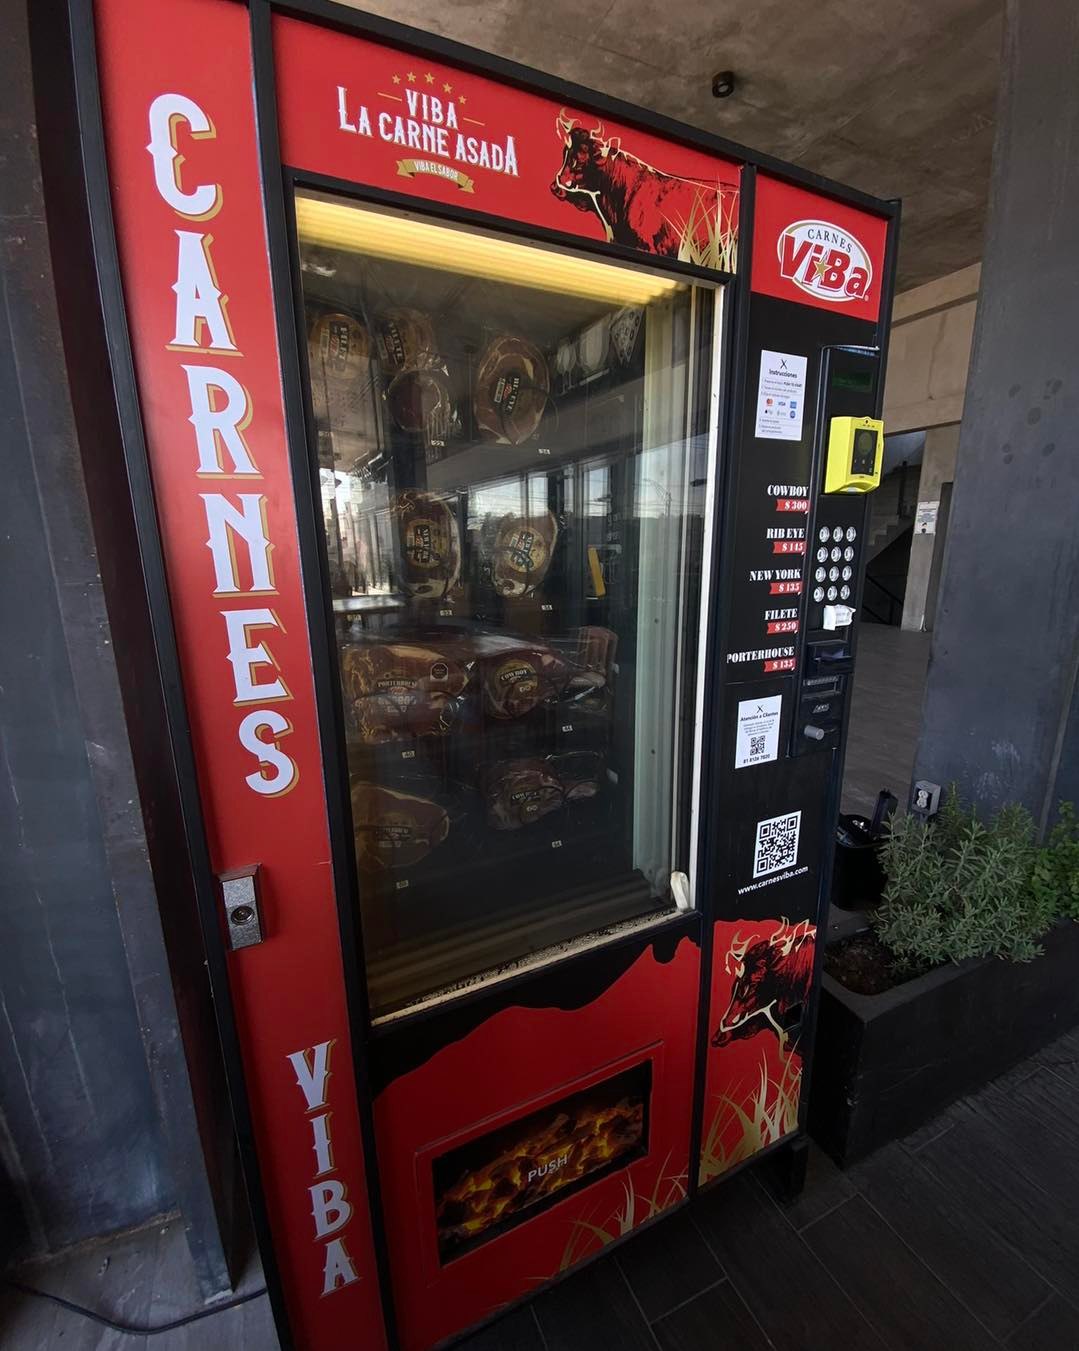 ¡Es real y está en México! Crean máquina expendedora de carne asada